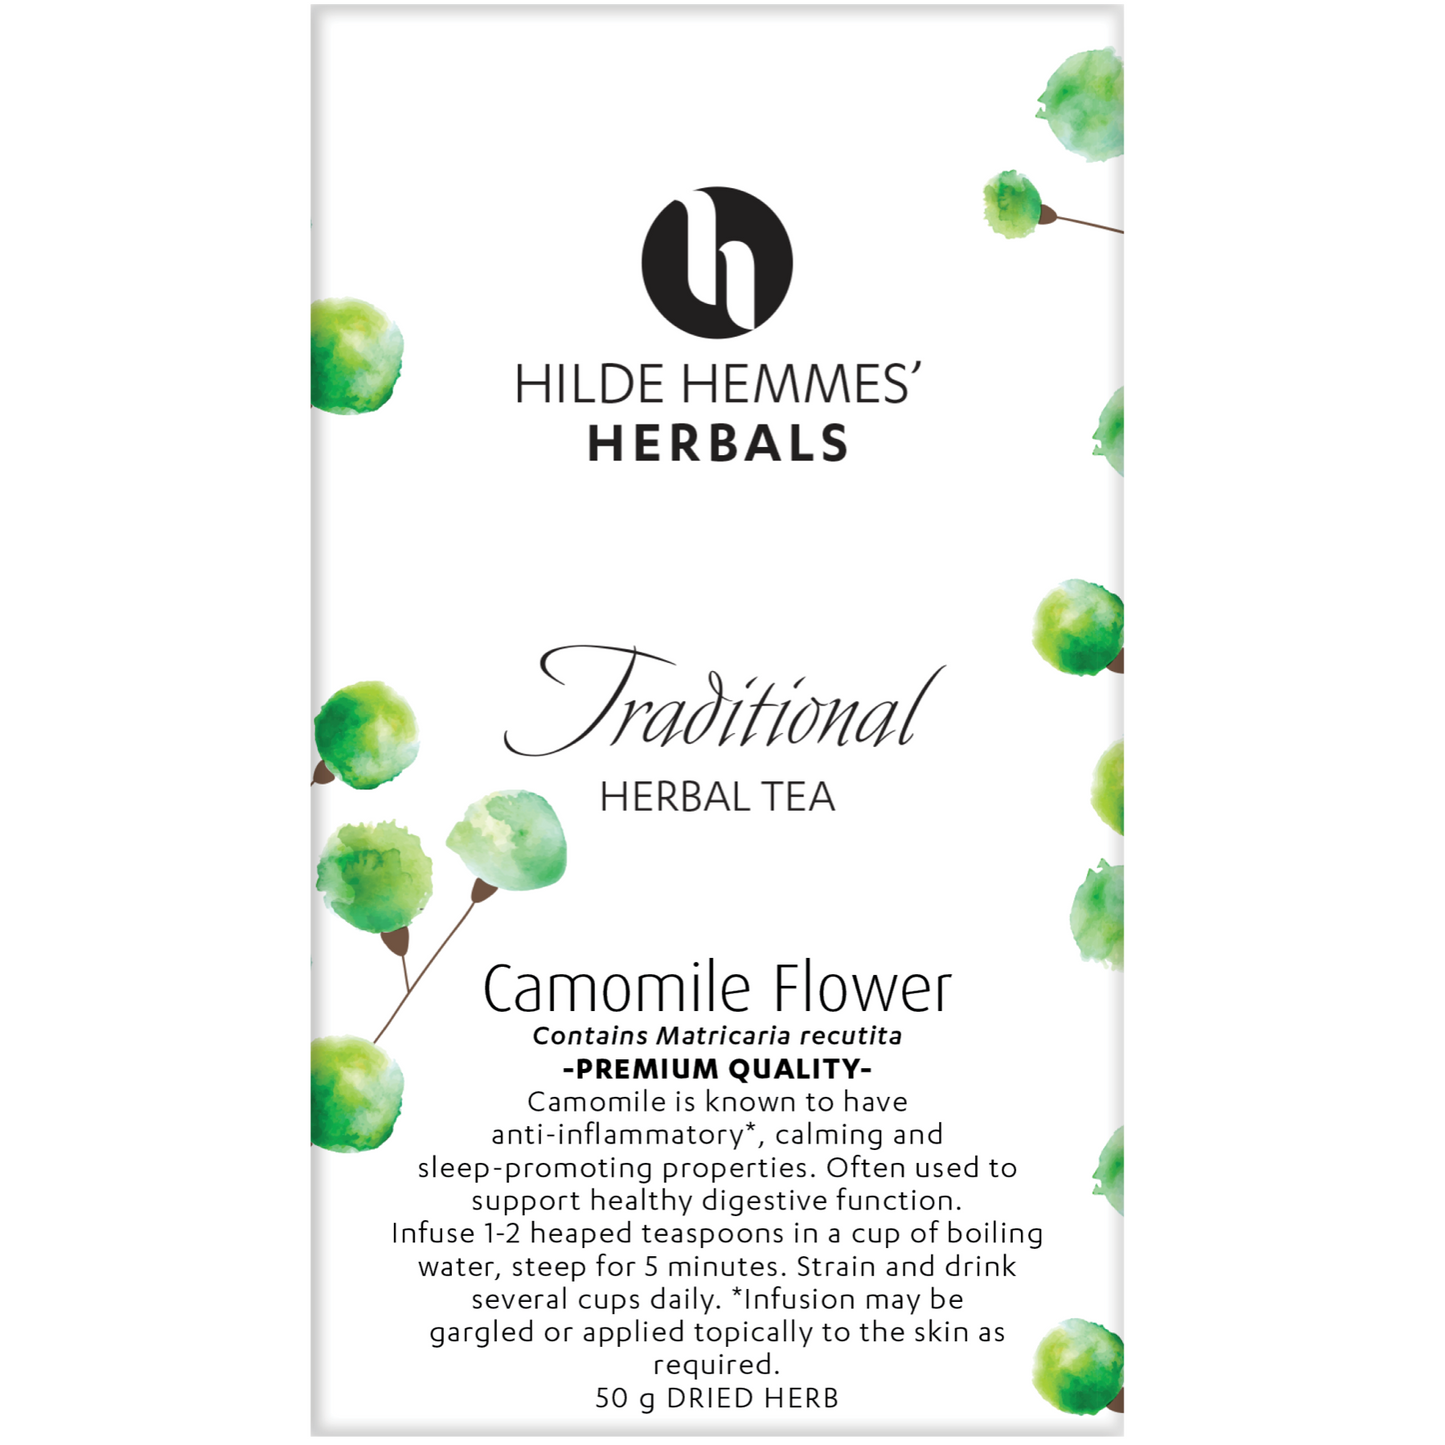 Hilde Hemmes Herbal's Tea 50g (Loose Leaf) Or 30 Tea Bags, Camomile Flower